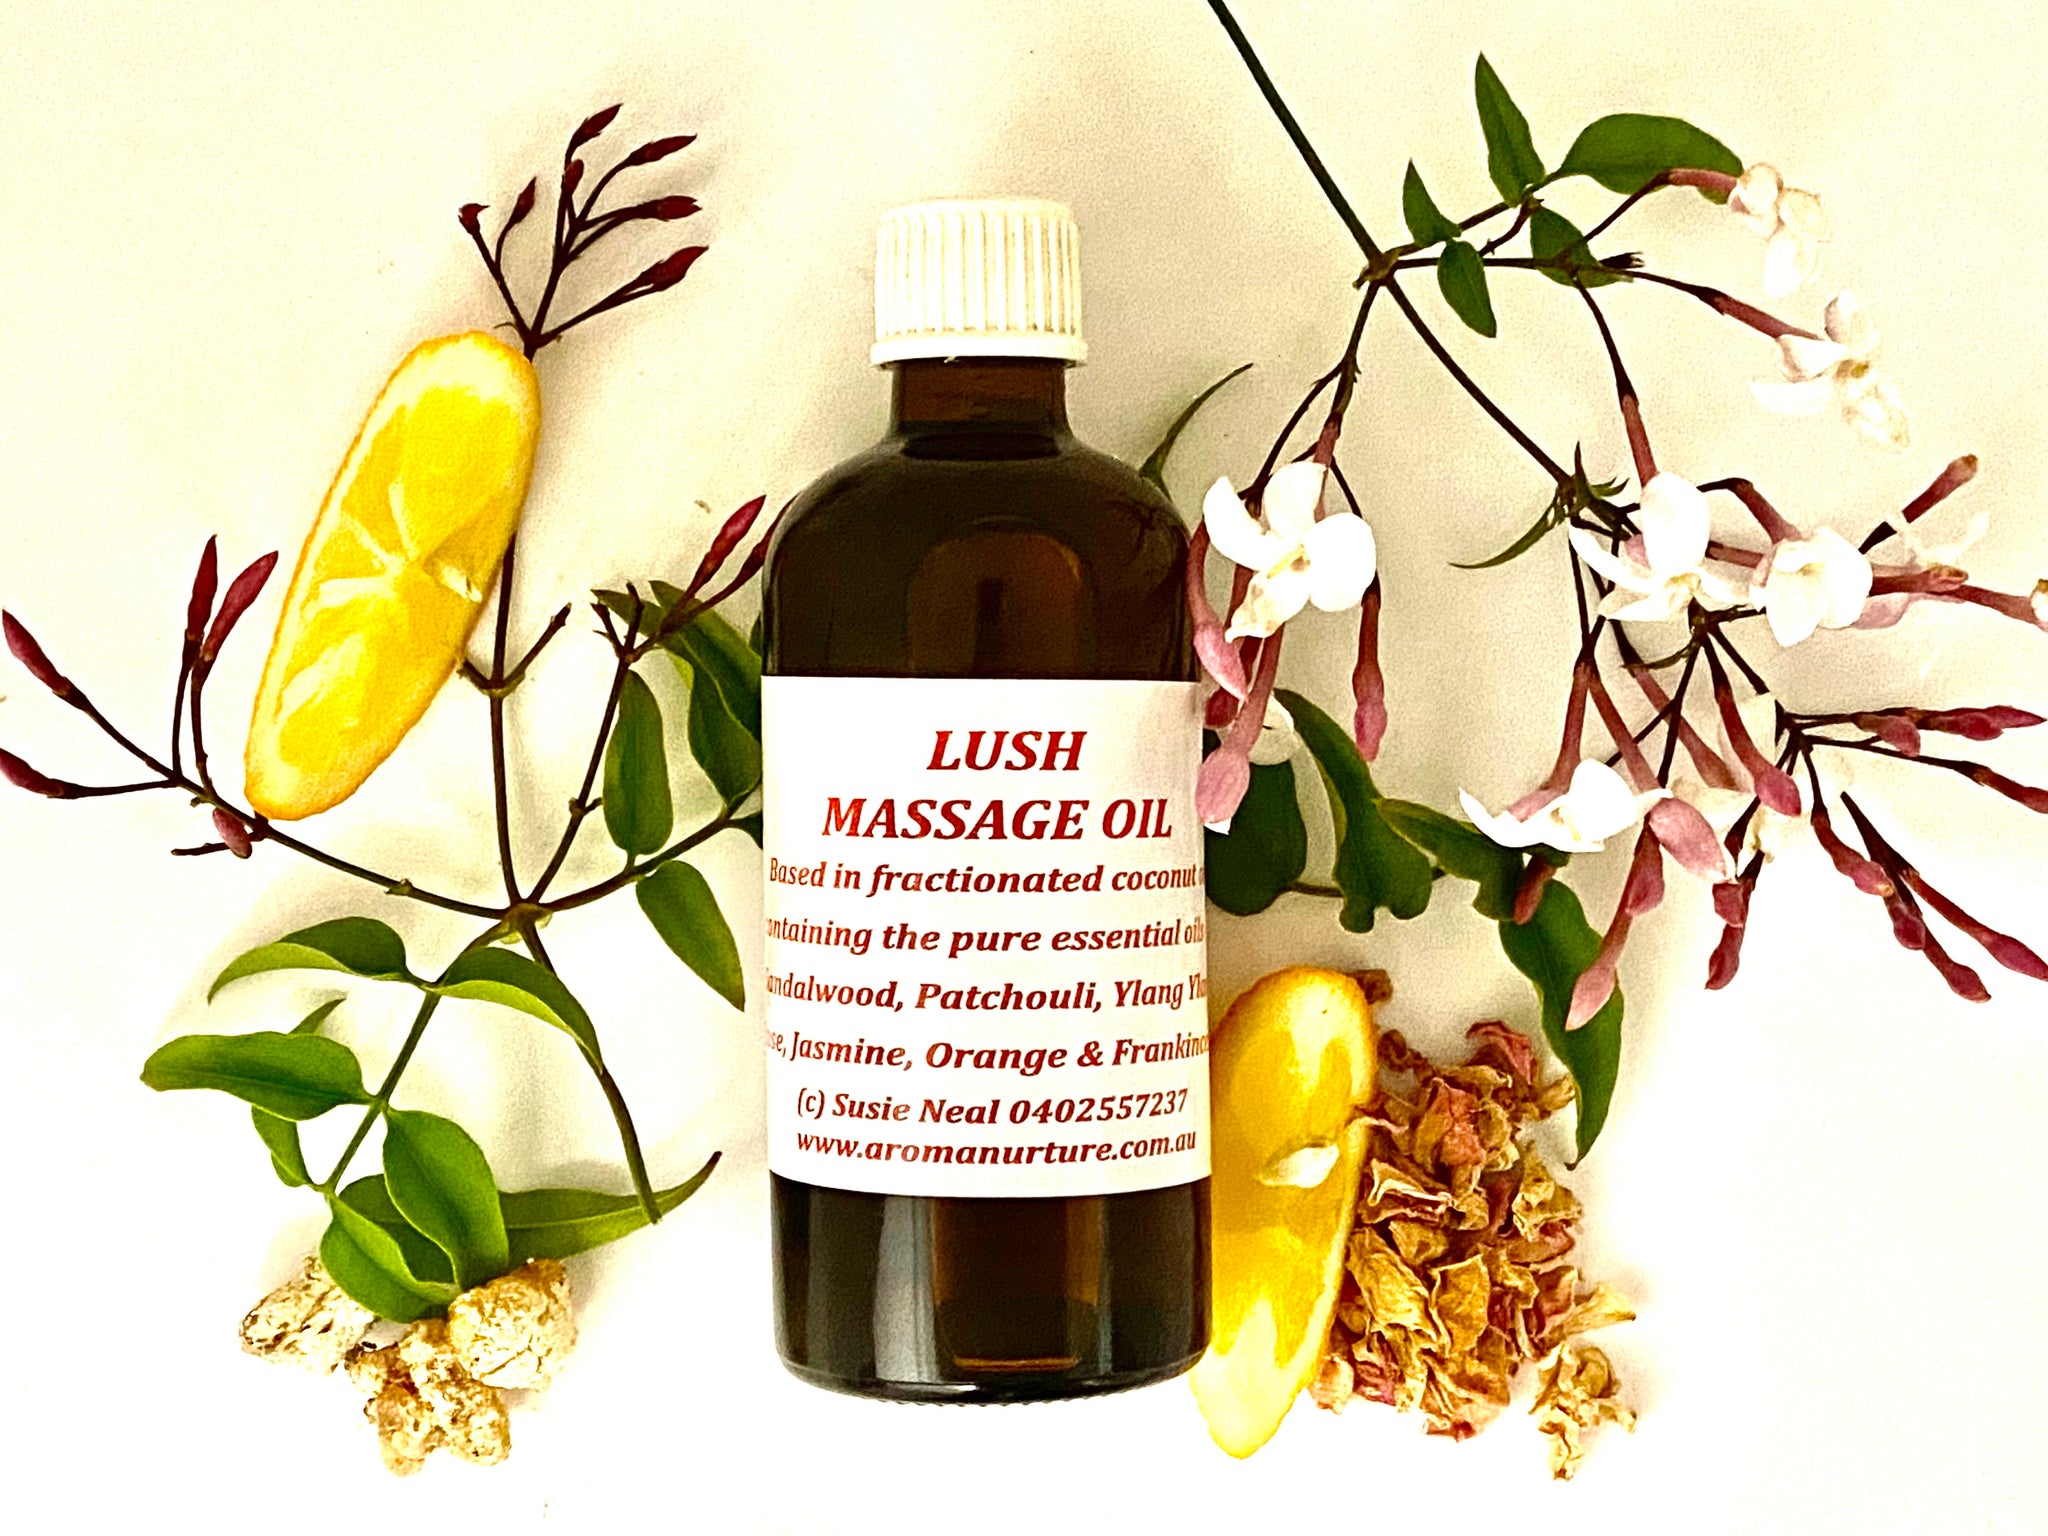 Lush Massage Oil in Light Olive Oil 100 mls.